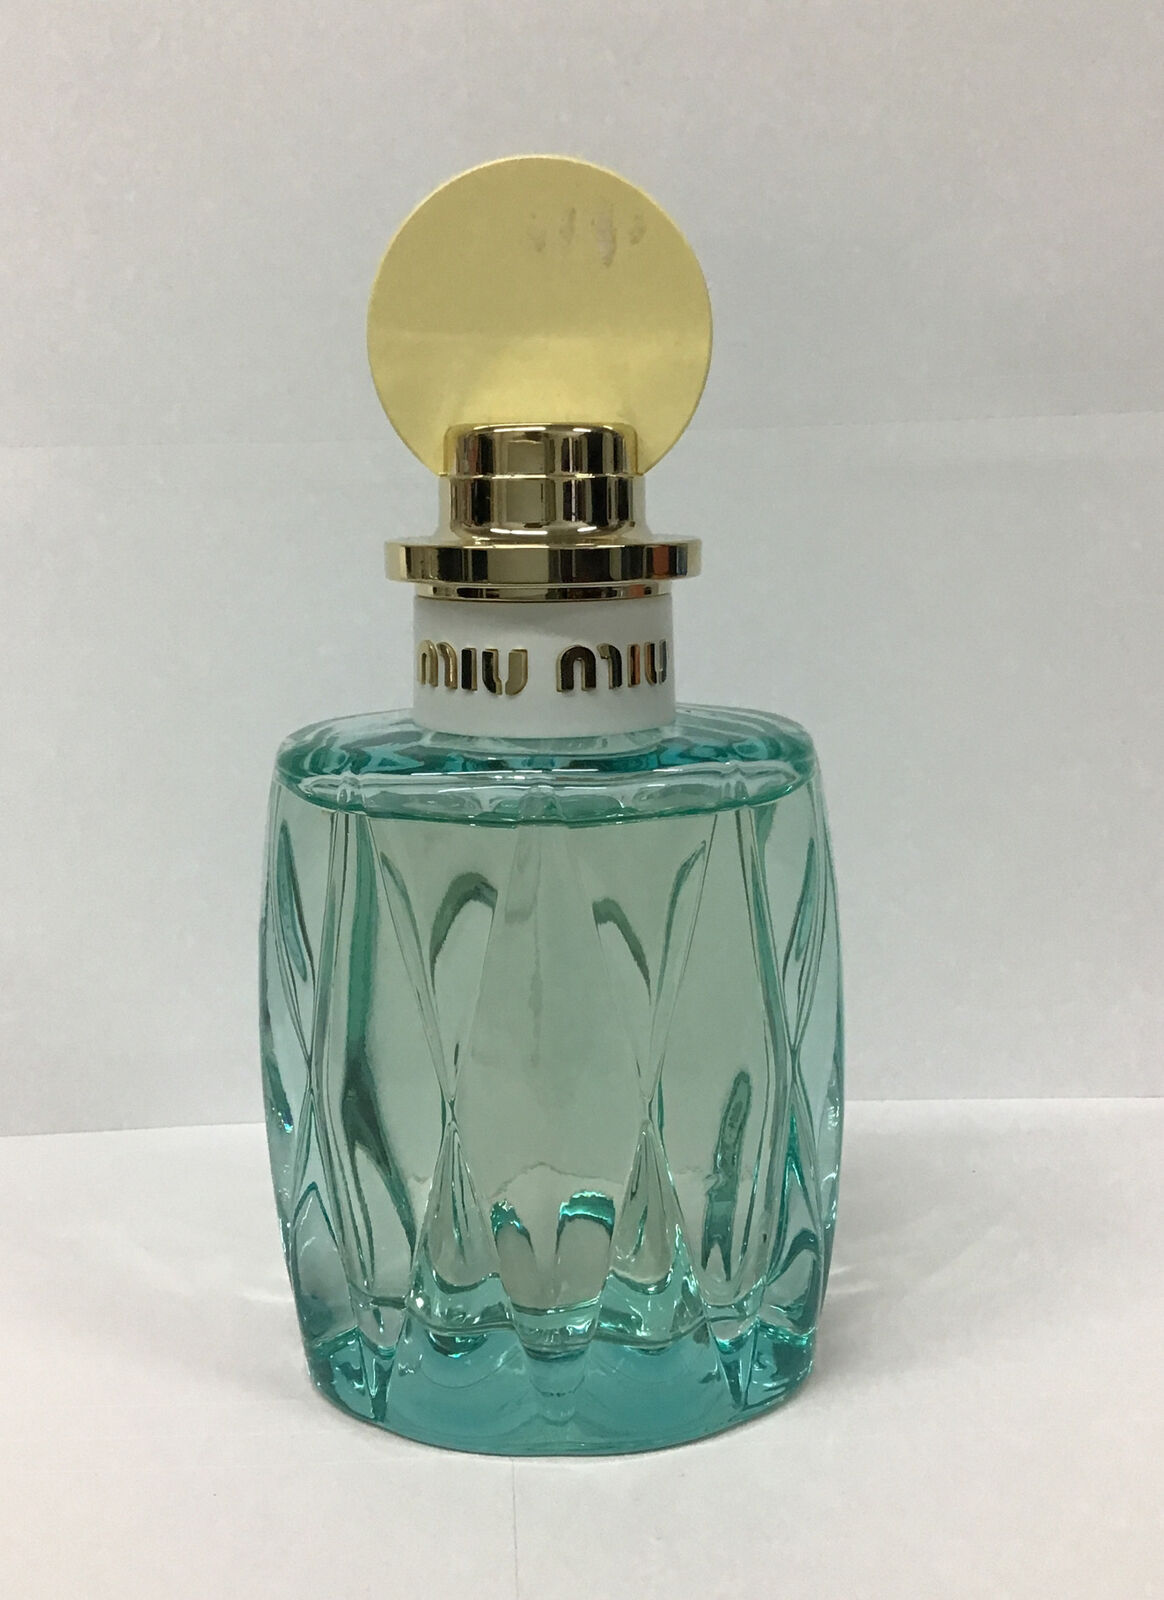 Miu Miu L’Eau Bleue Eau De Parfum Spray 3.4 Fl Oz, As Pictured.